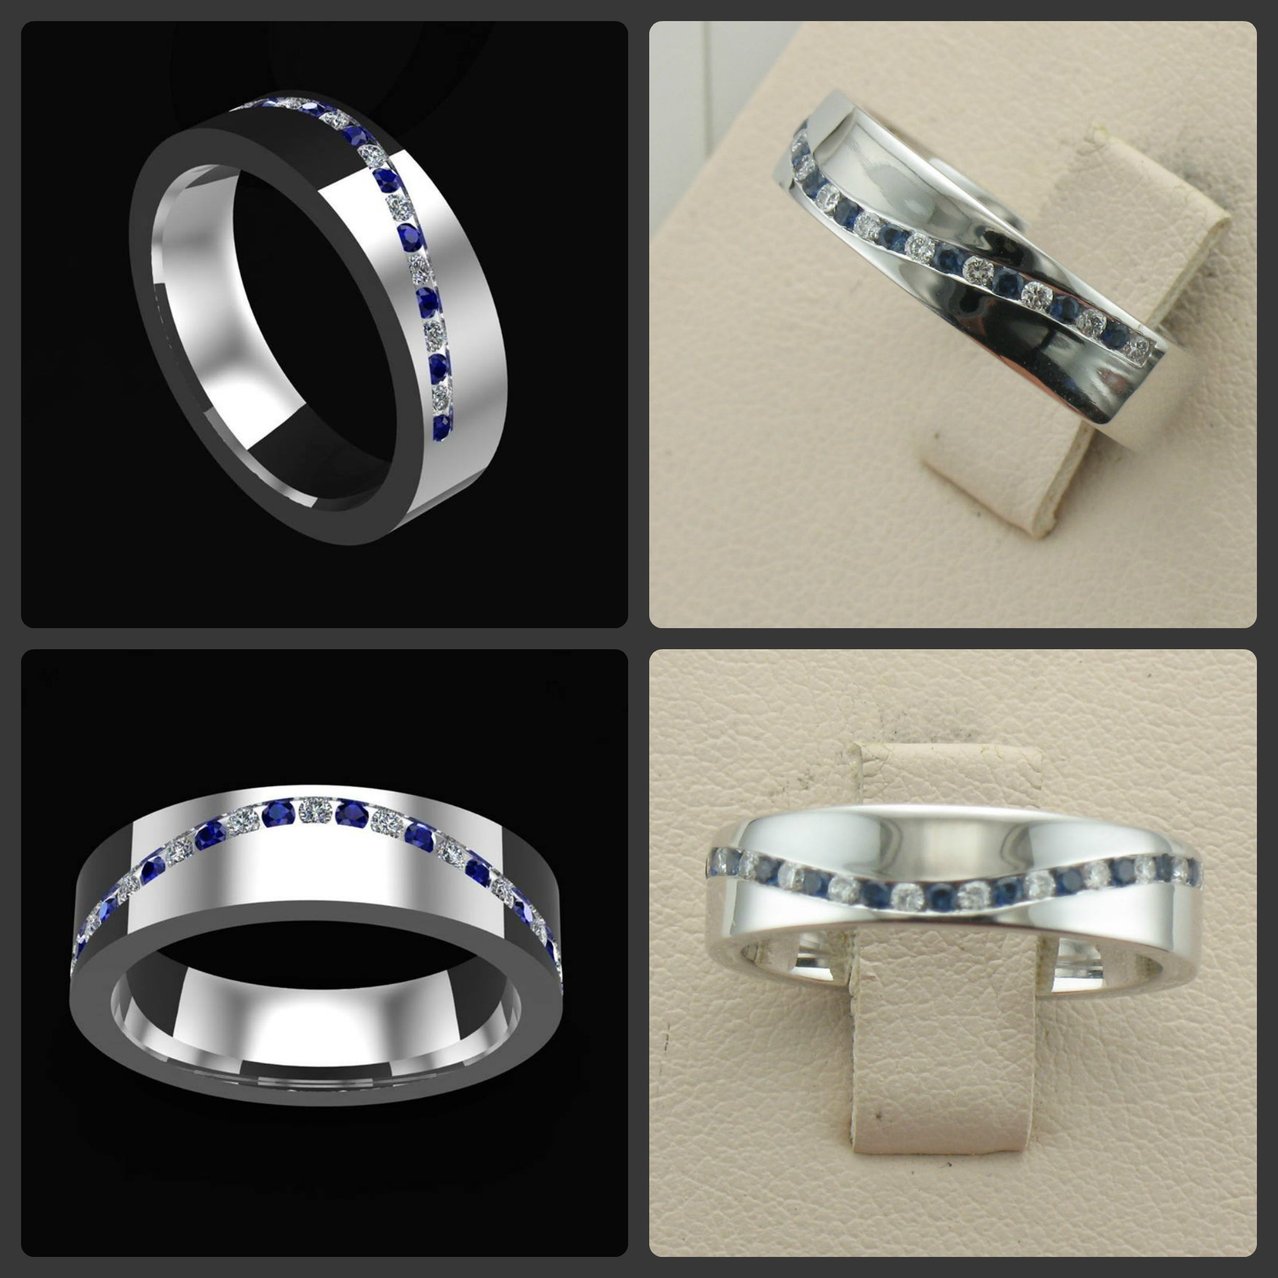 CAD Design - Finished Ring